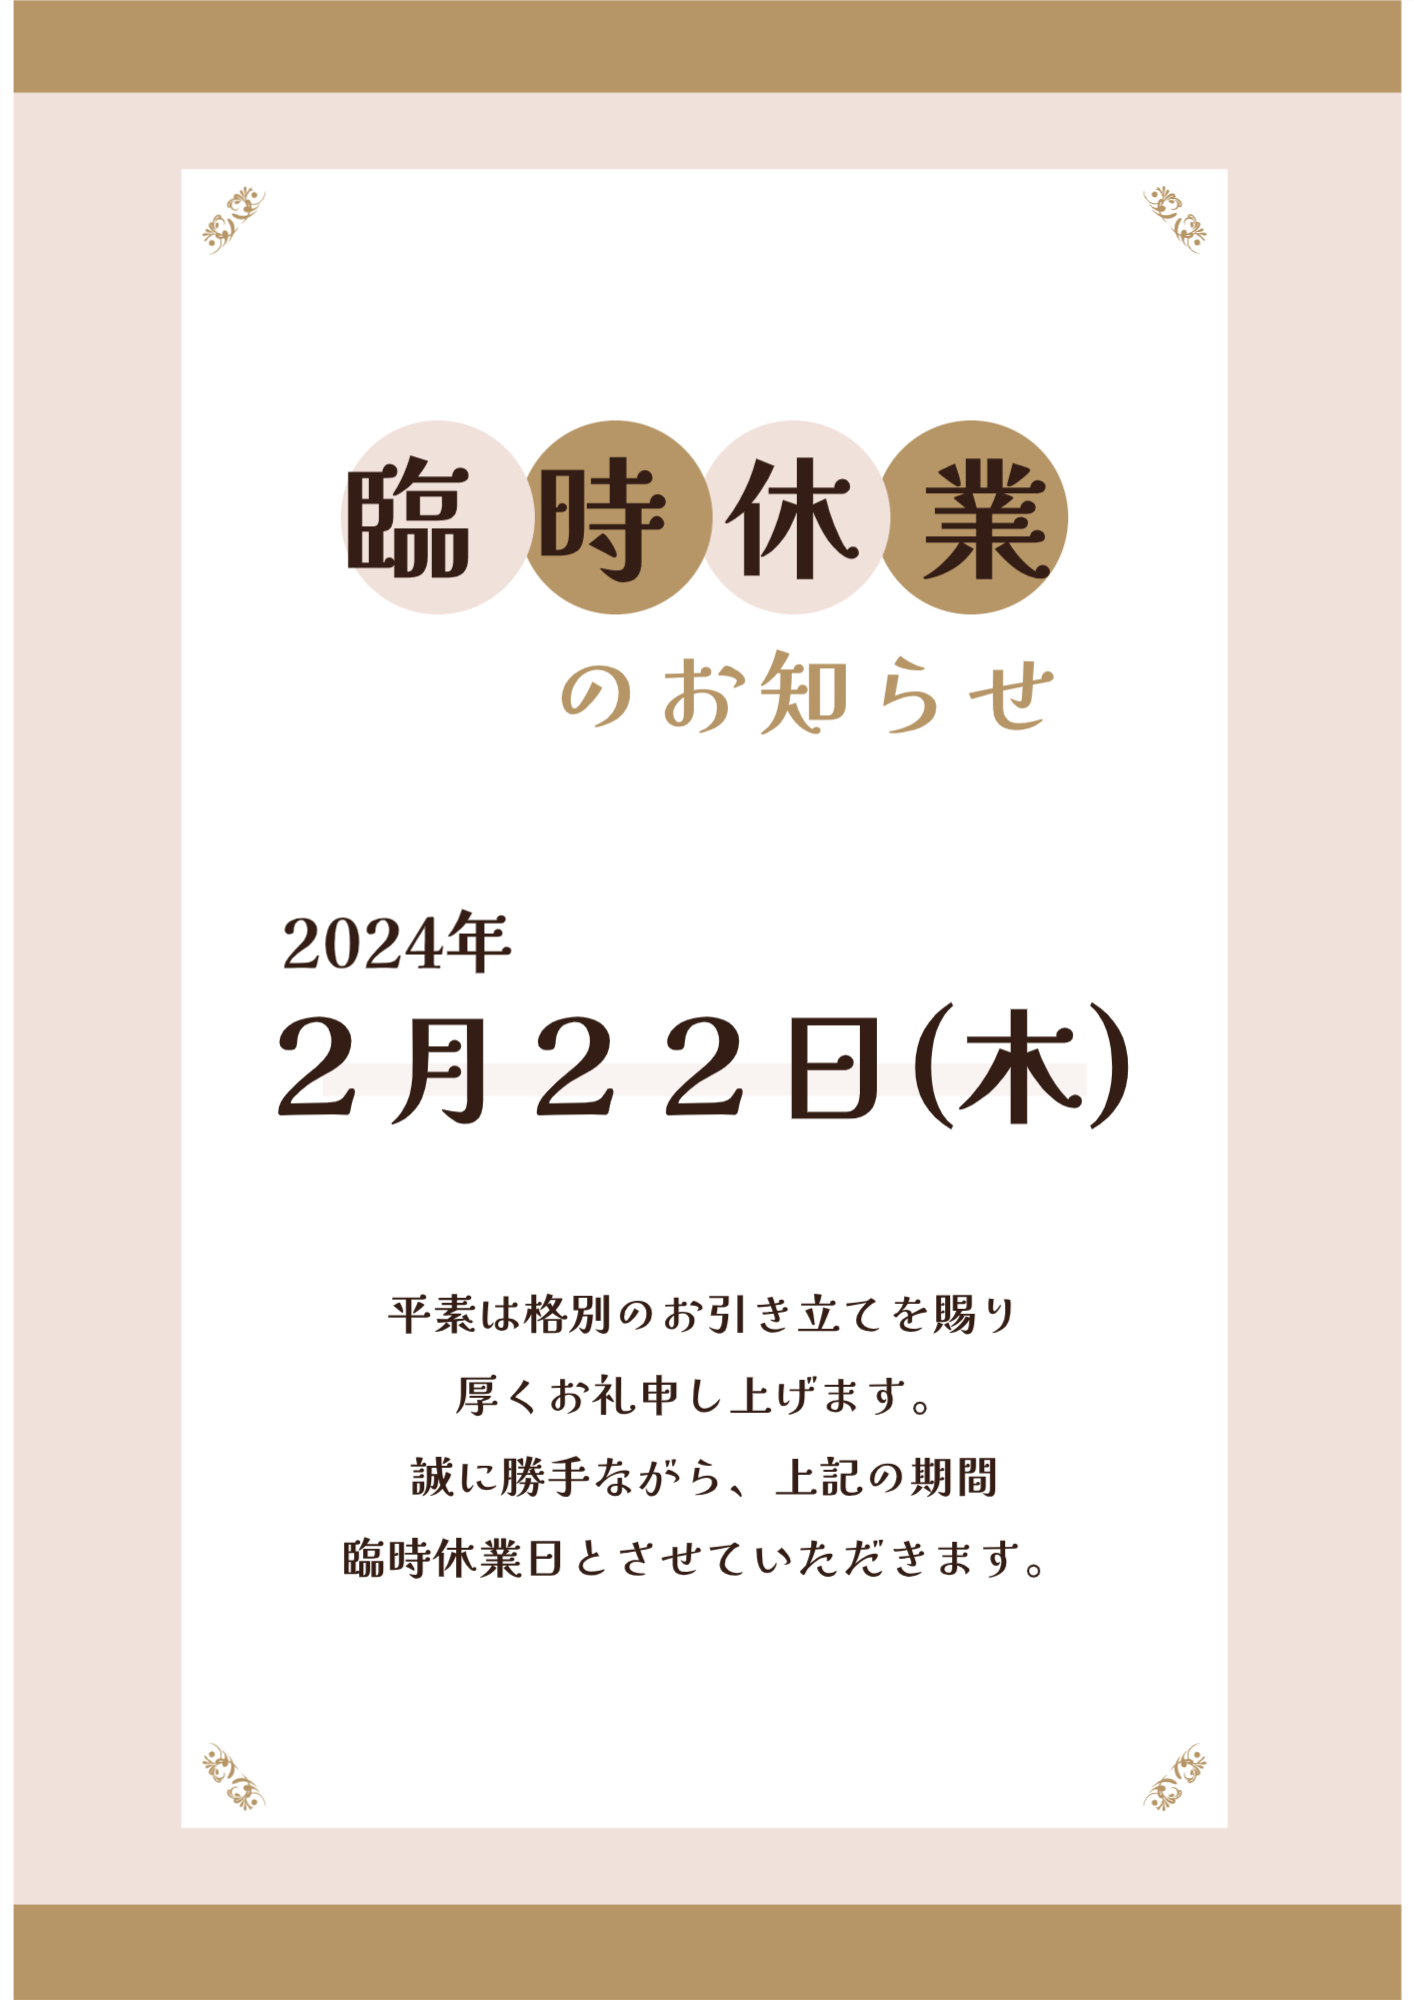 臨時休業のお知らせ：2月22日(木) TERAMOTOのブログ 写真1